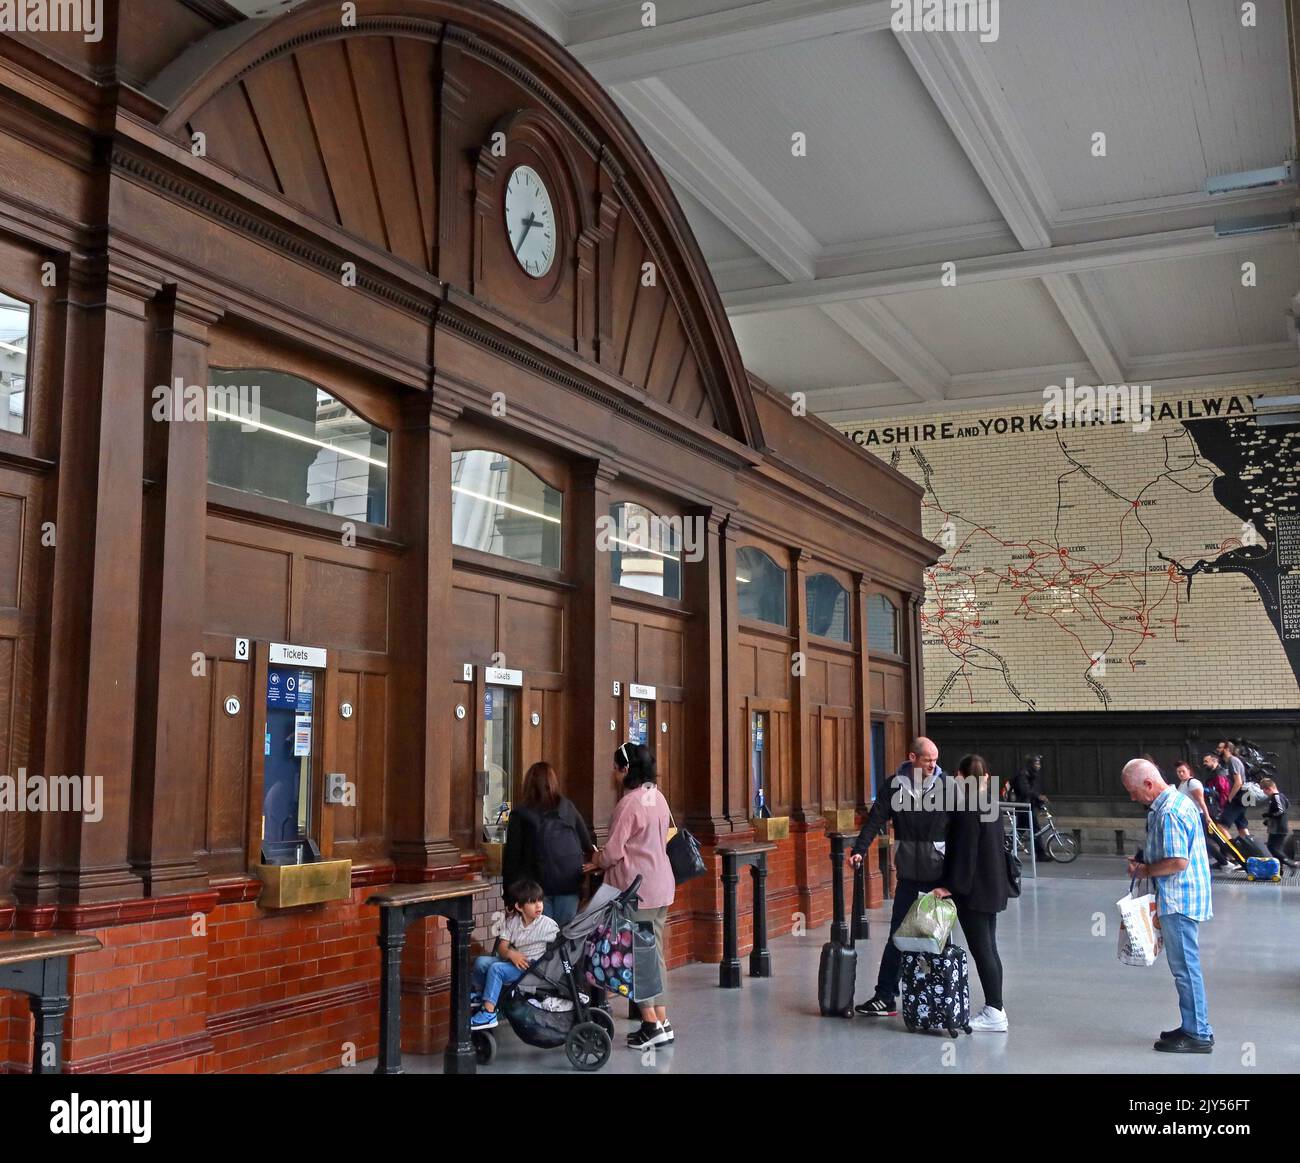 Innenseite des Bahnhofs Manchester Victoria mit Originalfenstern des Ticketbüros, Victoria Railway Station, Manchester, England, Großbritannien, M3 1WY Stockfoto